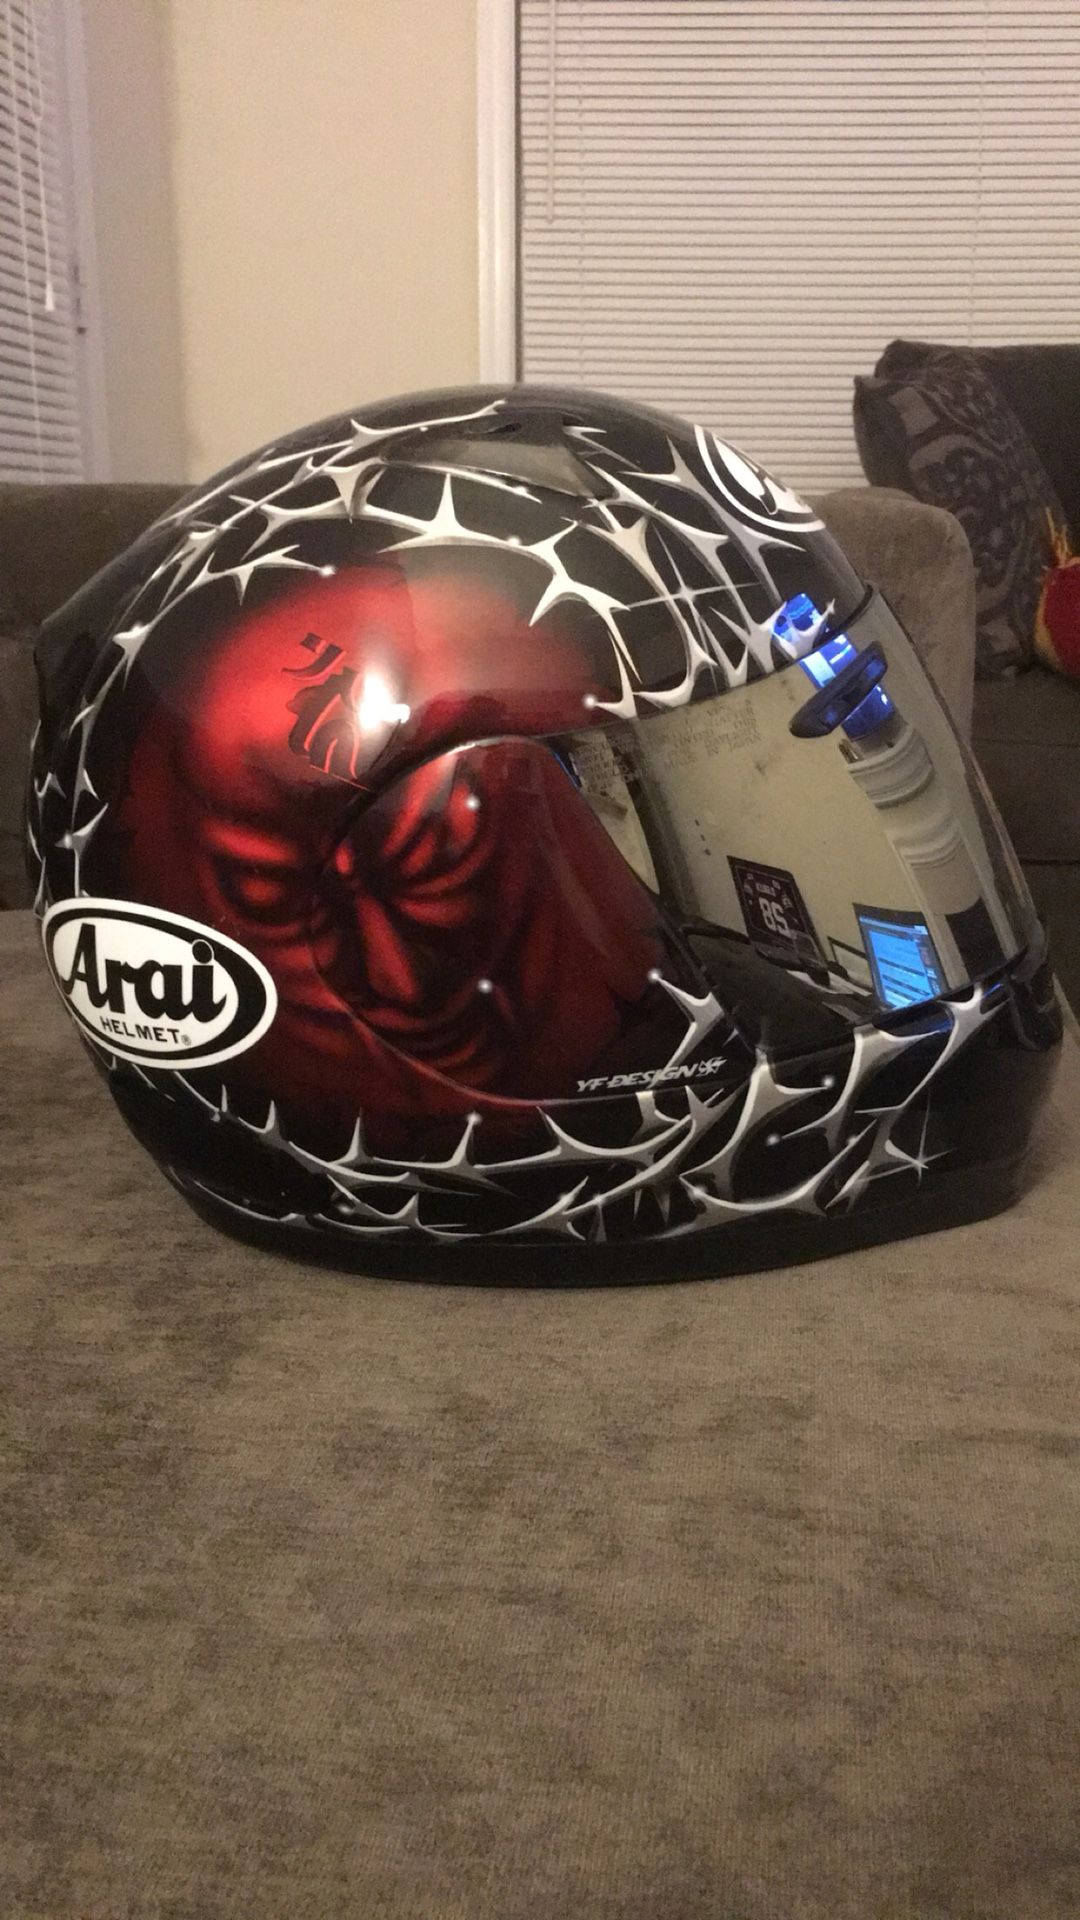 Arai Motorcycle helmet